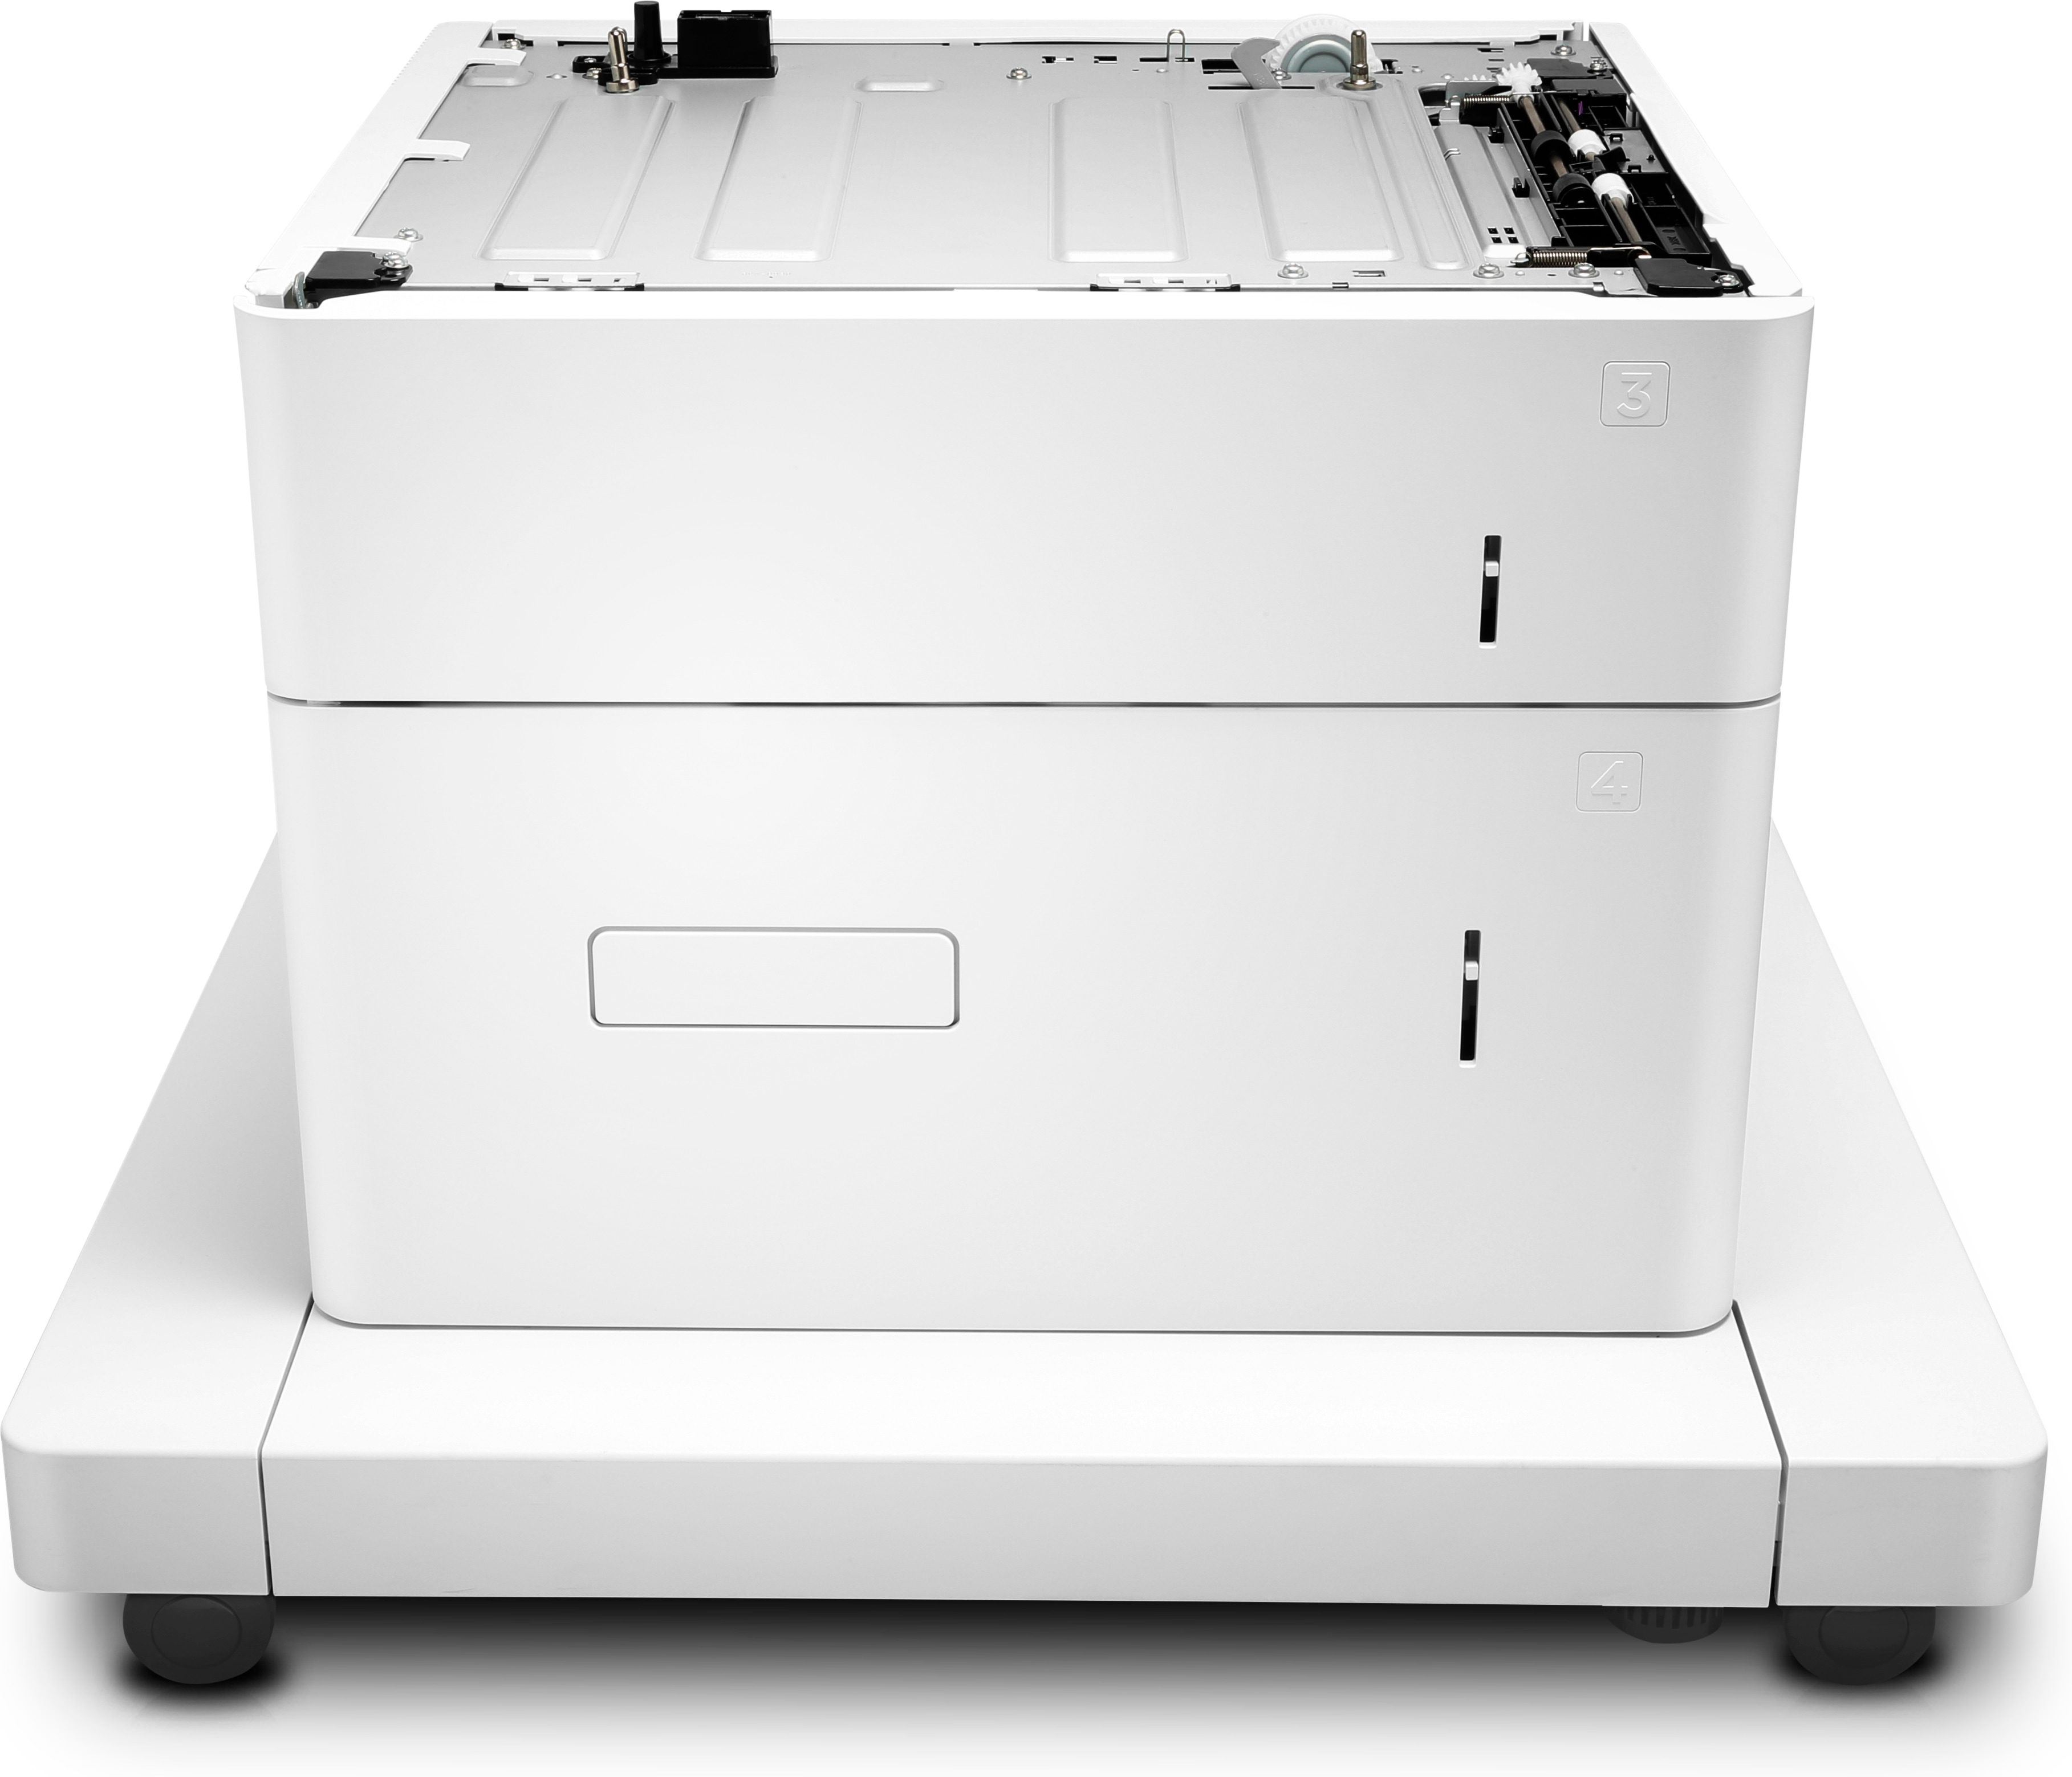 HP Papiereinzug und Ständer - Druckerbasis mit Medienzuführung - 2550 Blätter in 2 Schubladen (Trays)